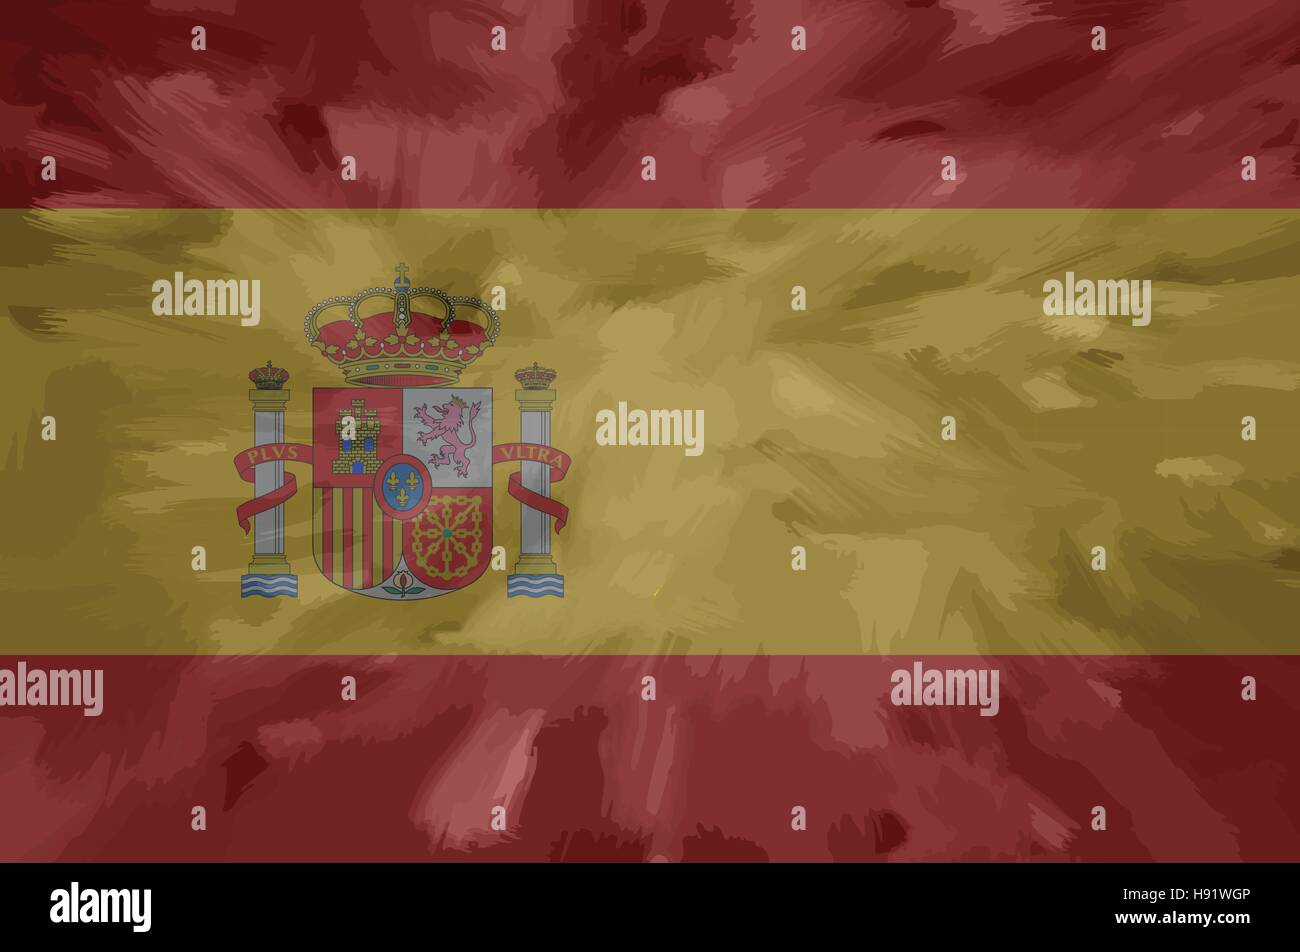 Spanien-bemalt / gezeichnete Vektor-Flagge. Dramatische, ungewöhnliche Optik. Vektor-Datei enthält Flagge und Textur-Layer Stock Vektor